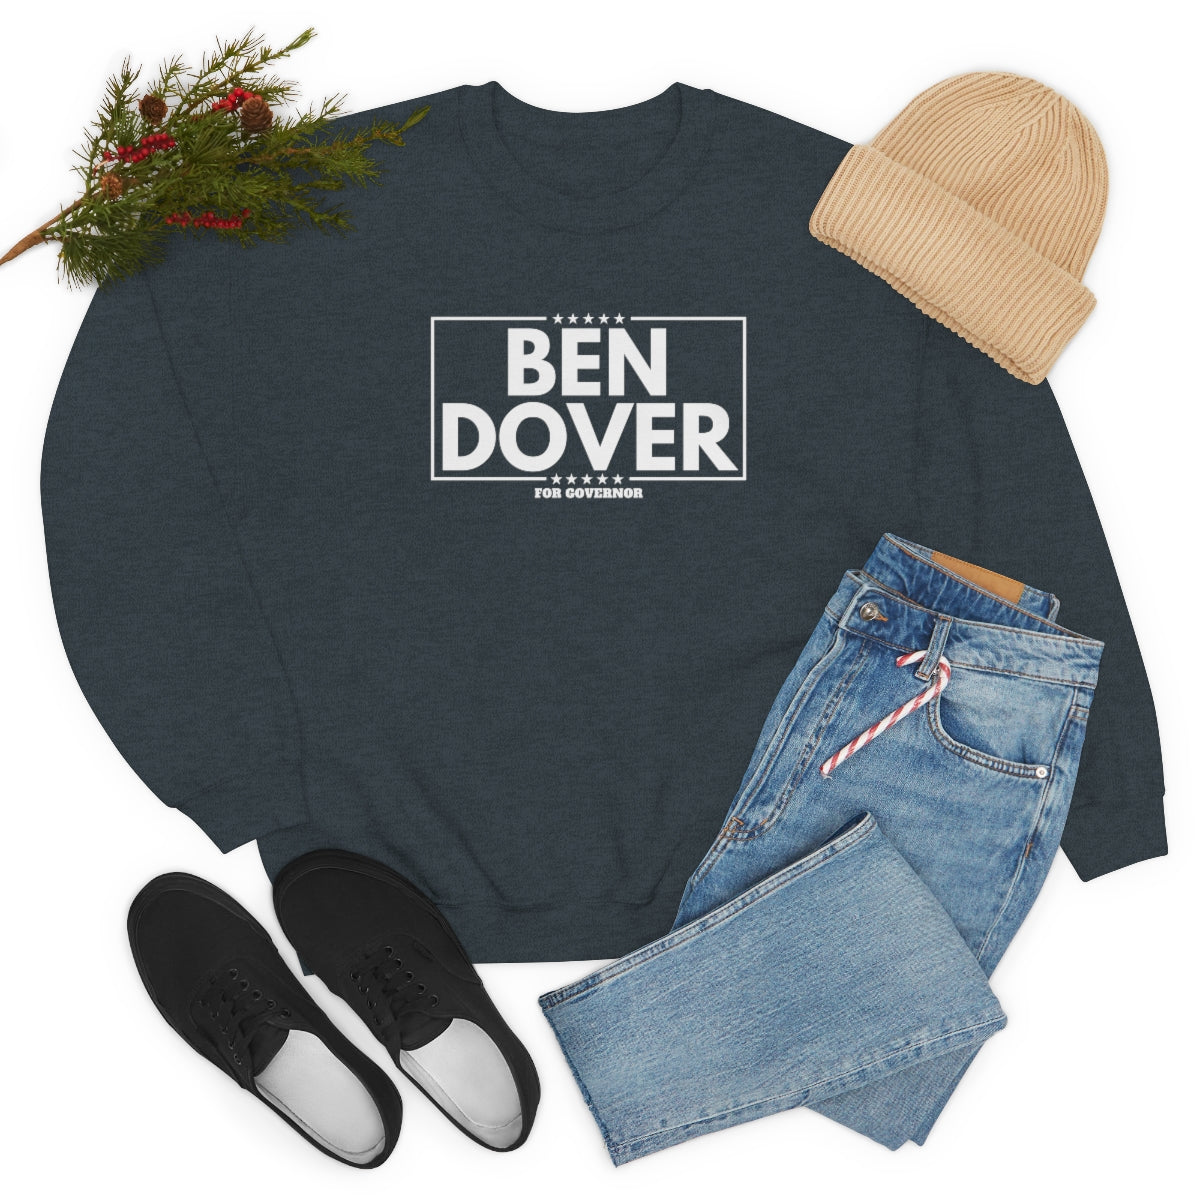 Ben Dover - Unisex Heavy Blend™ Crewneck Sweatshirt